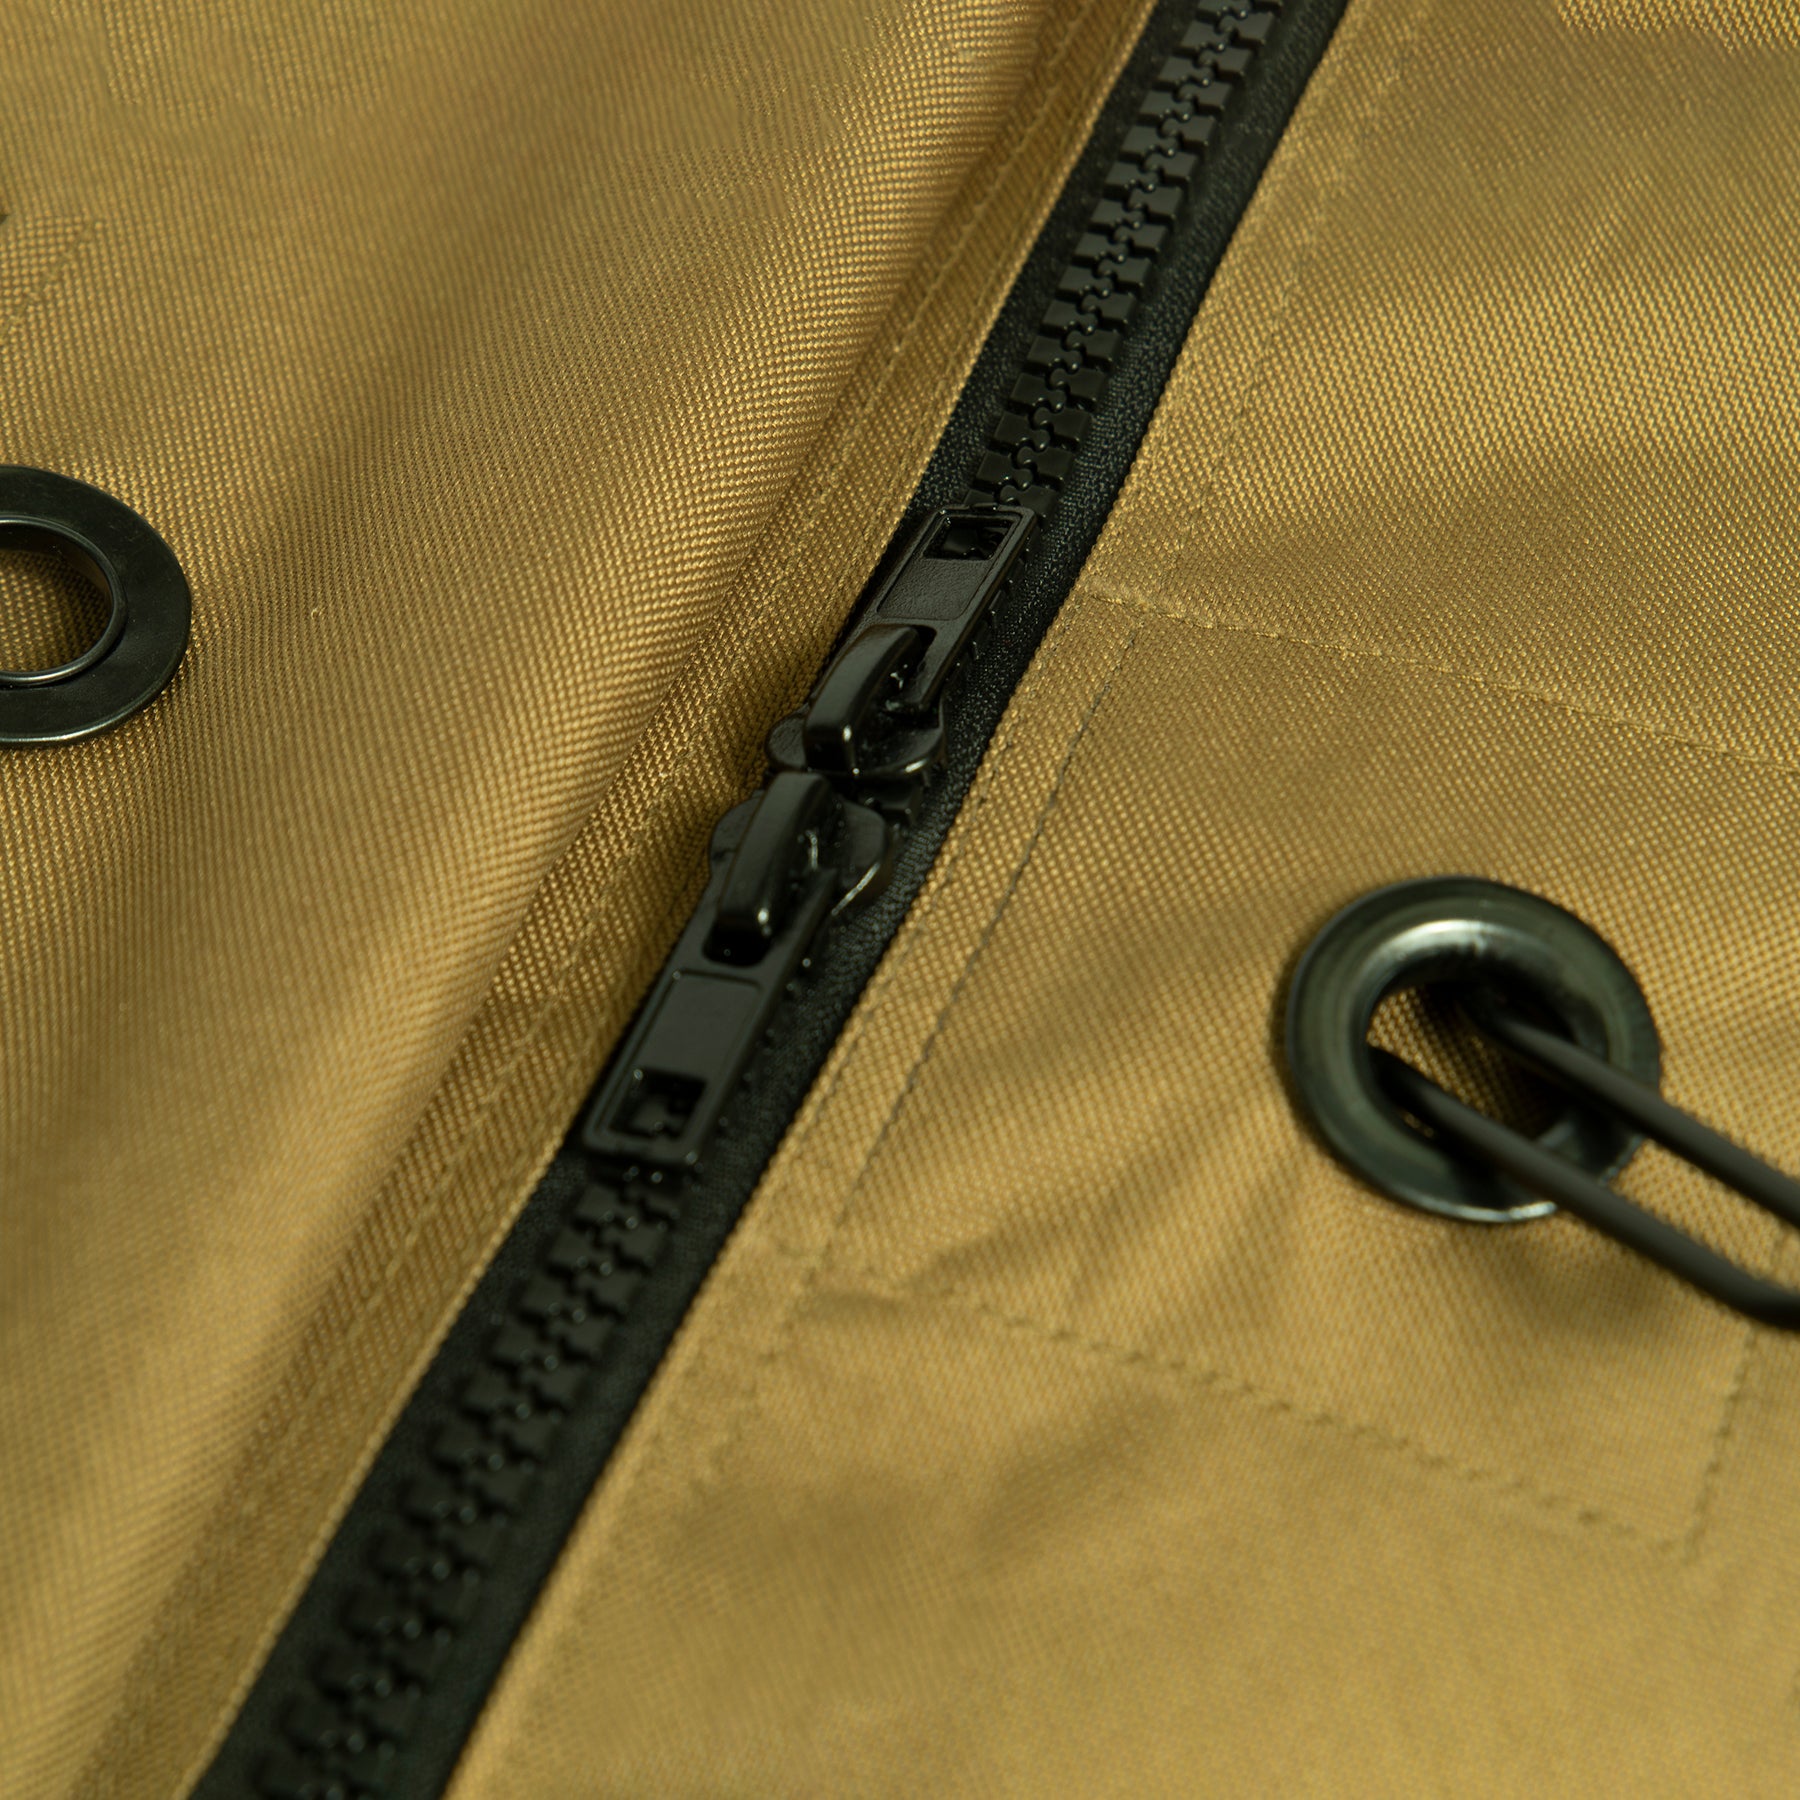 Enhanced Duffle Bag - Tactical Choice Plus